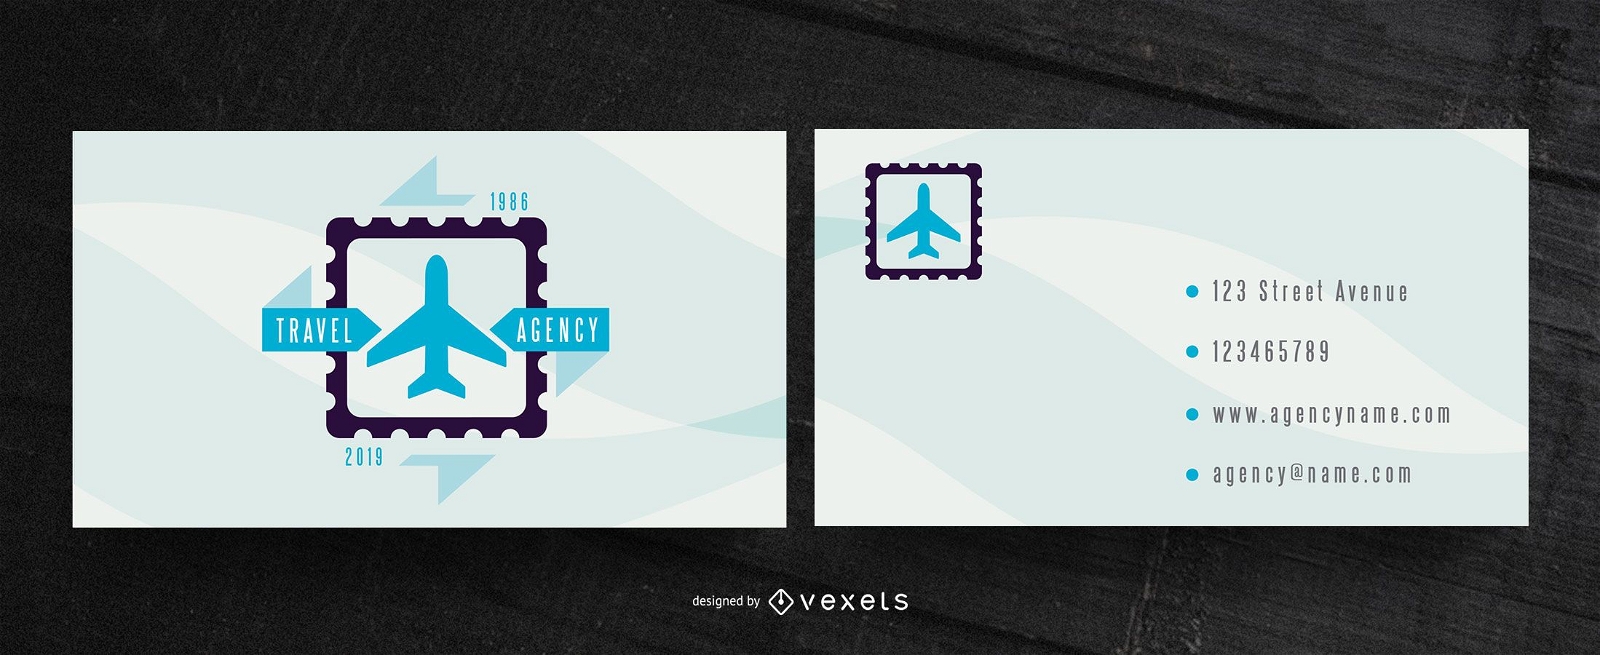 Design de cartão de visita para agências de viagens